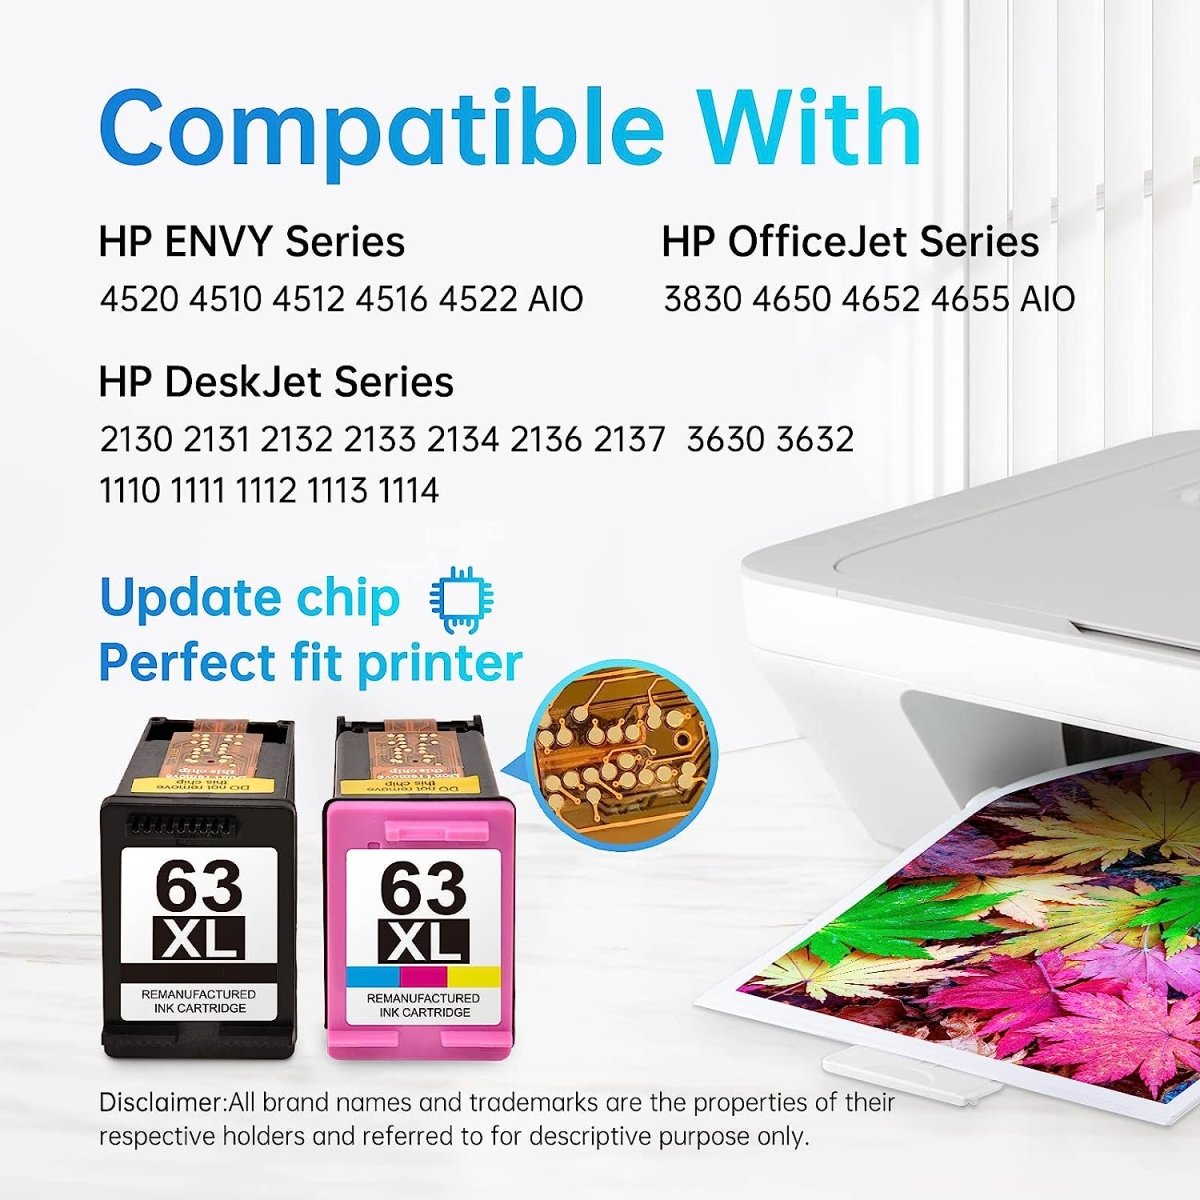 63XL Remanufactured Ink Cartridge for HP Envy & OfficeJet & DeskJet Printer (Black, Color, 2 Pack) - Linford Office:Printer Ink & Toner Cartridge